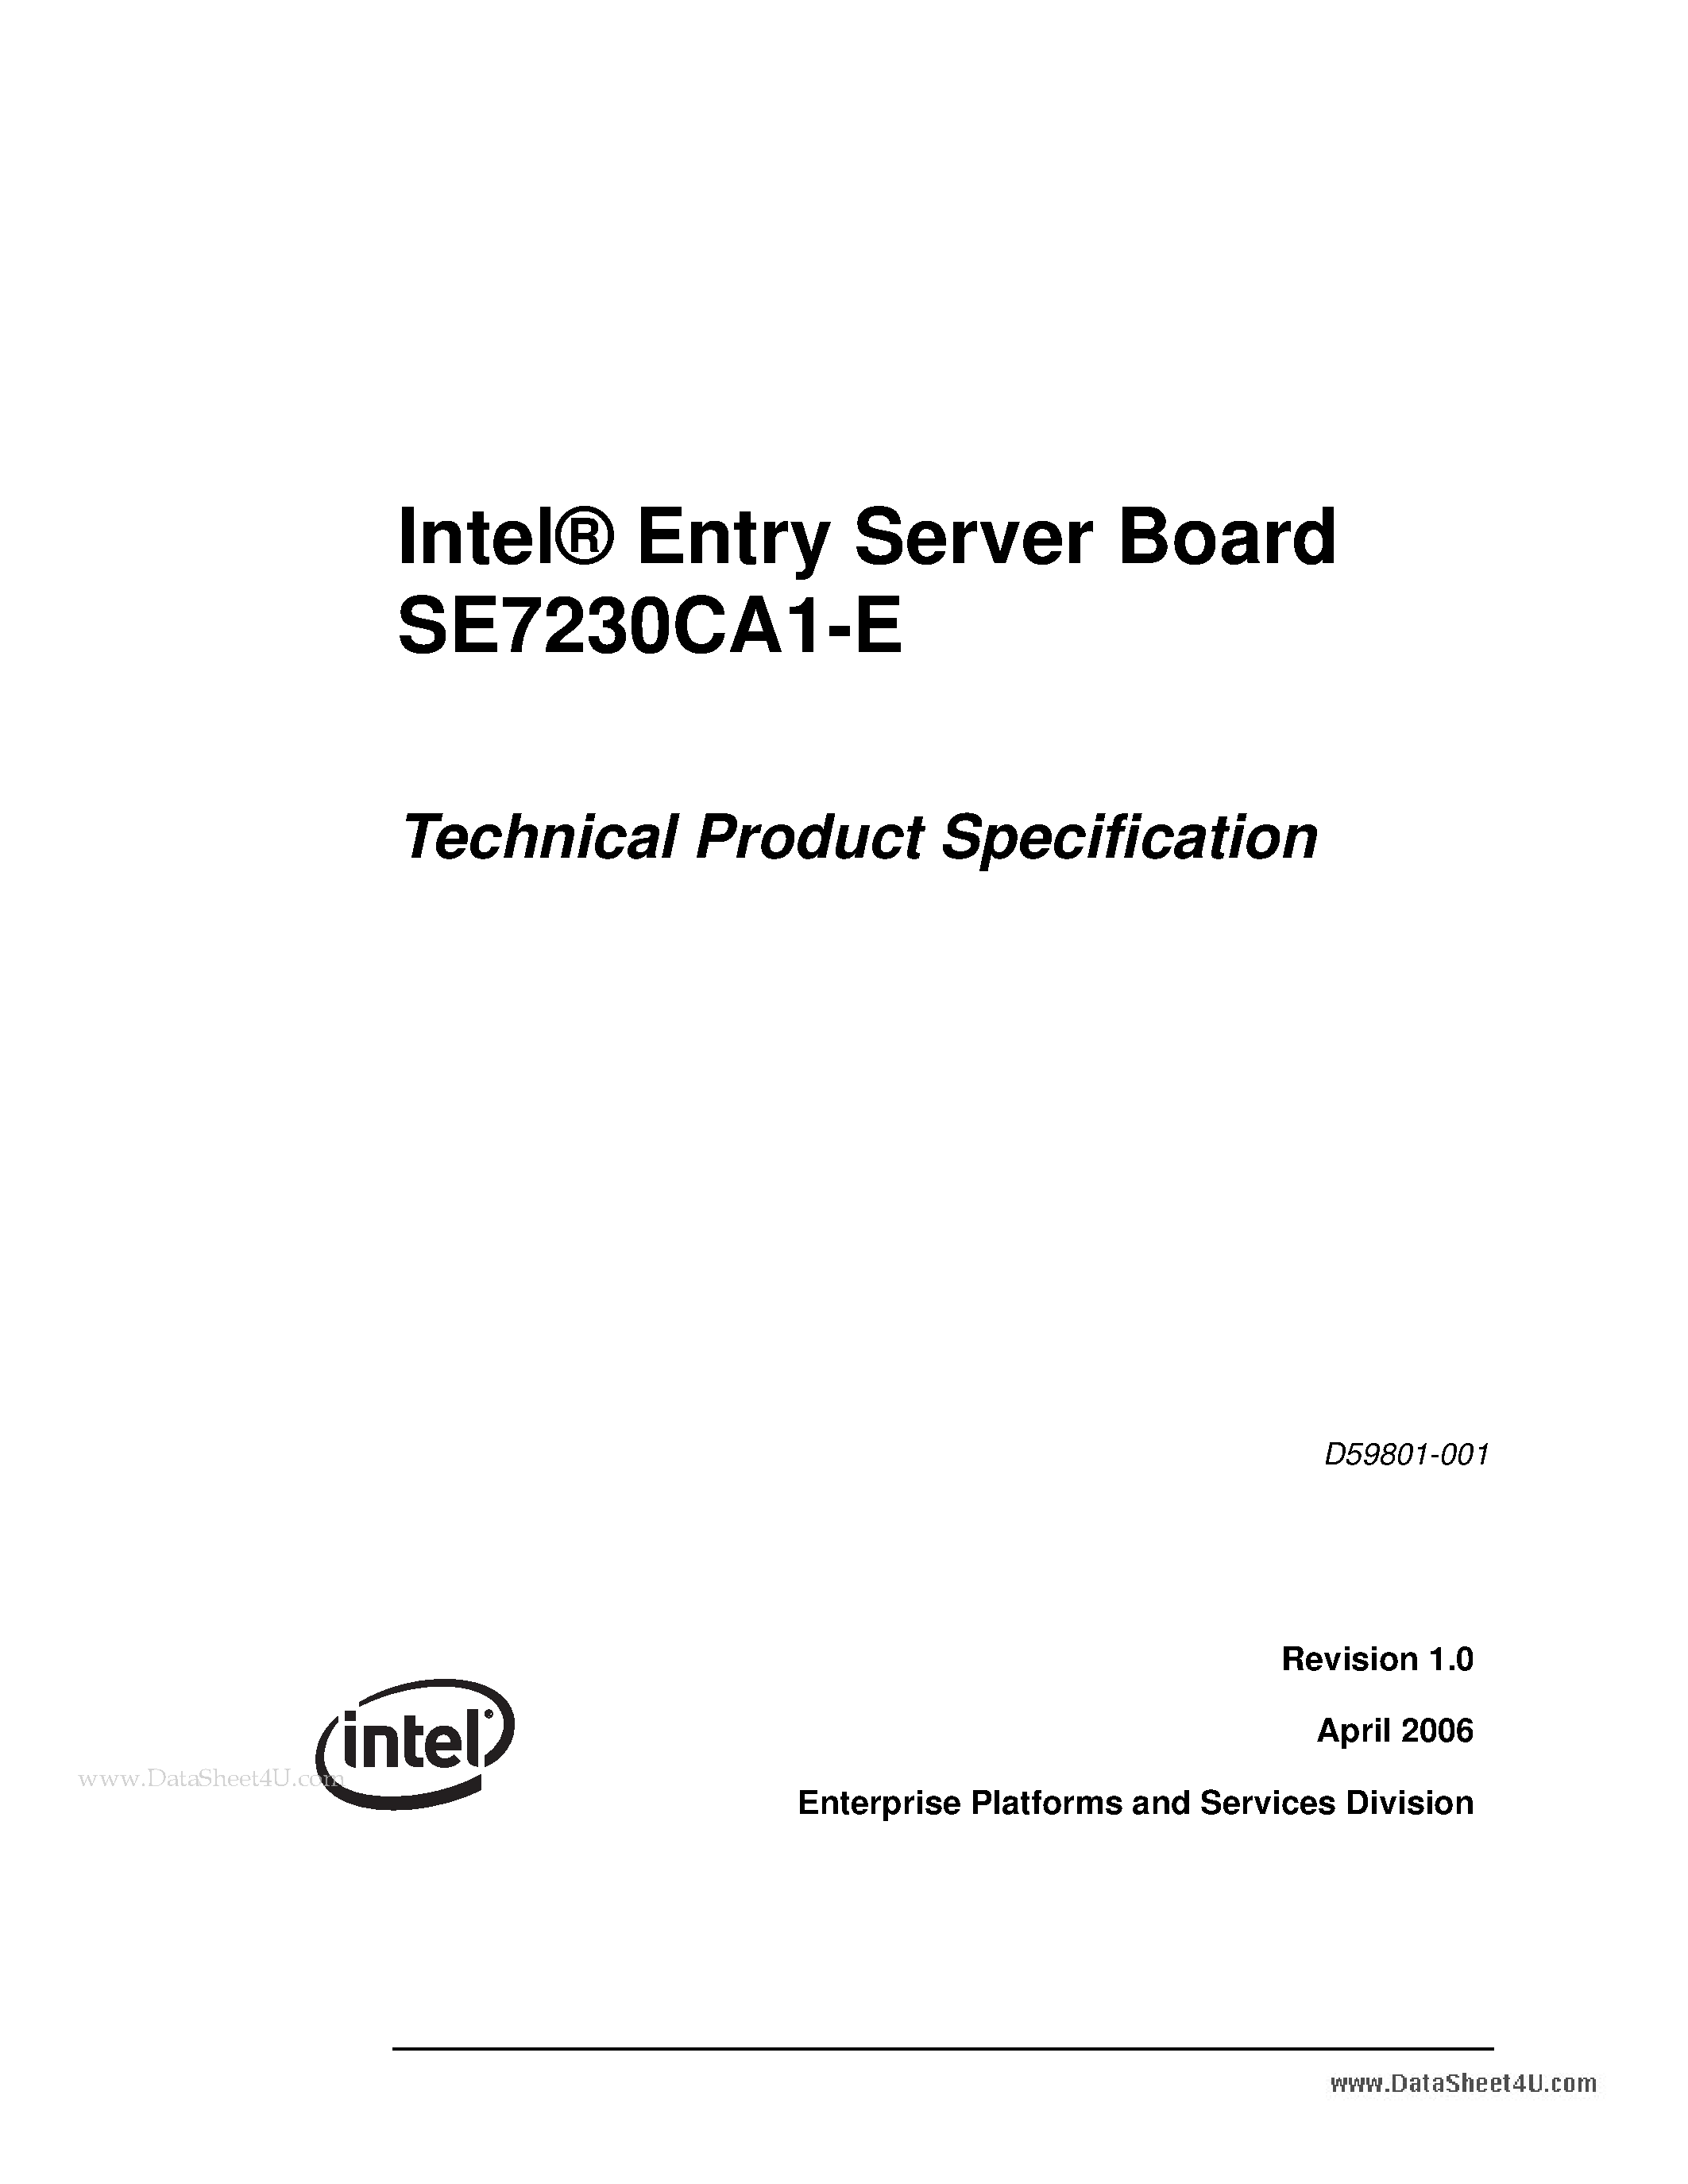 Даташит SE7230CA1-E - Entry Server Board страница 1